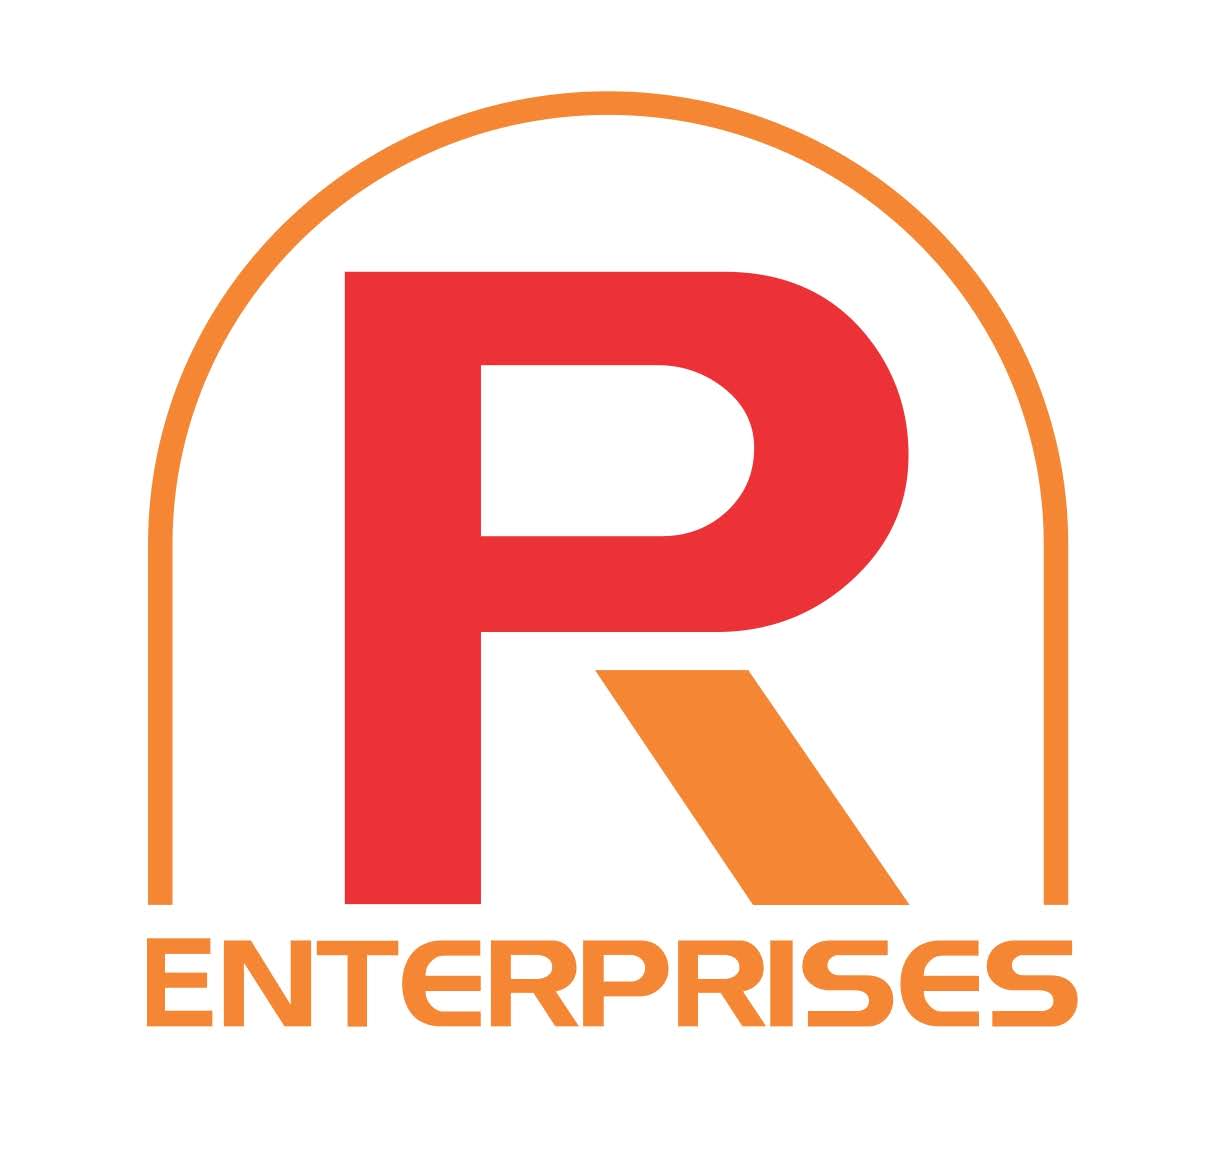 R P Enterprises